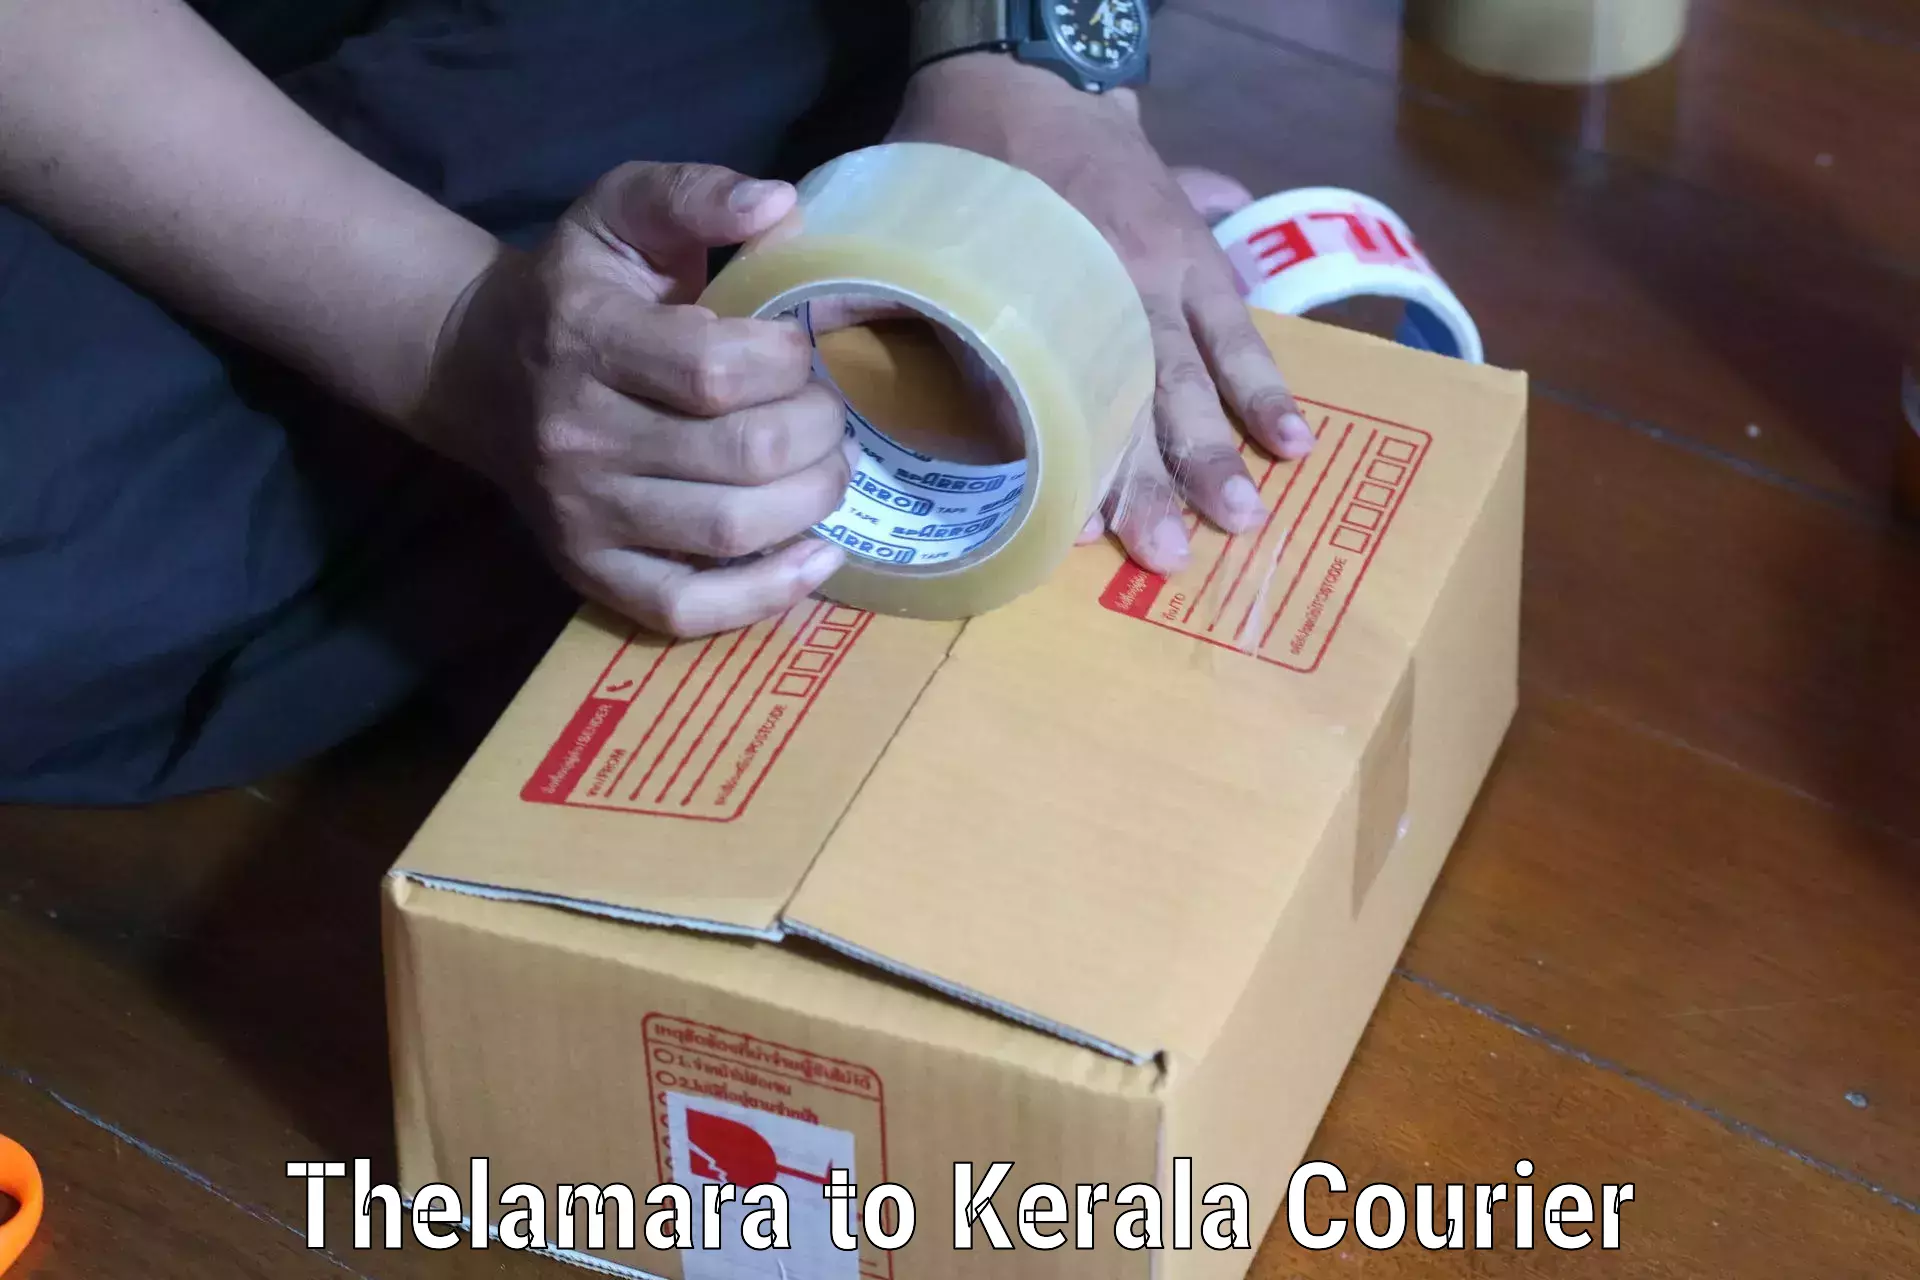 Domestic courier Thelamara to Cochin Port Kochi